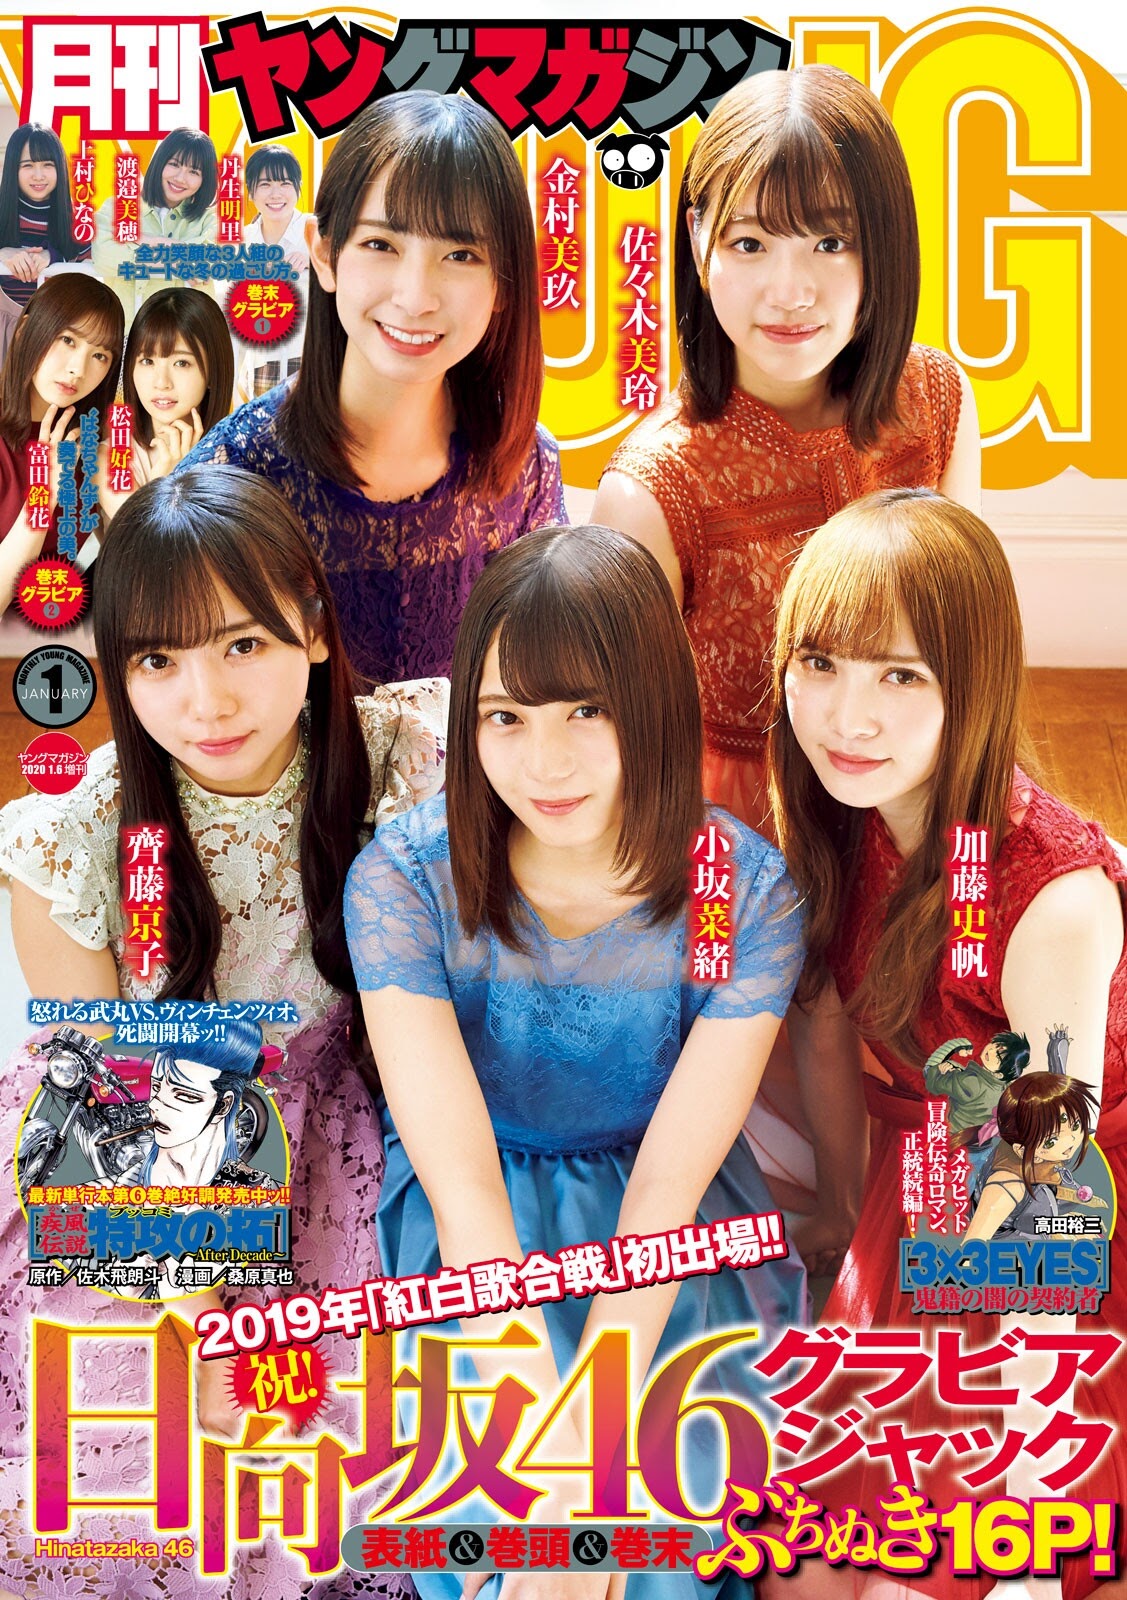 Young Magazine 2020.01 Hinatazaka46 Saito Kyoko, Kato Shiho, Sasaki Mirei, Kosaka Nao, Kanemura Miku